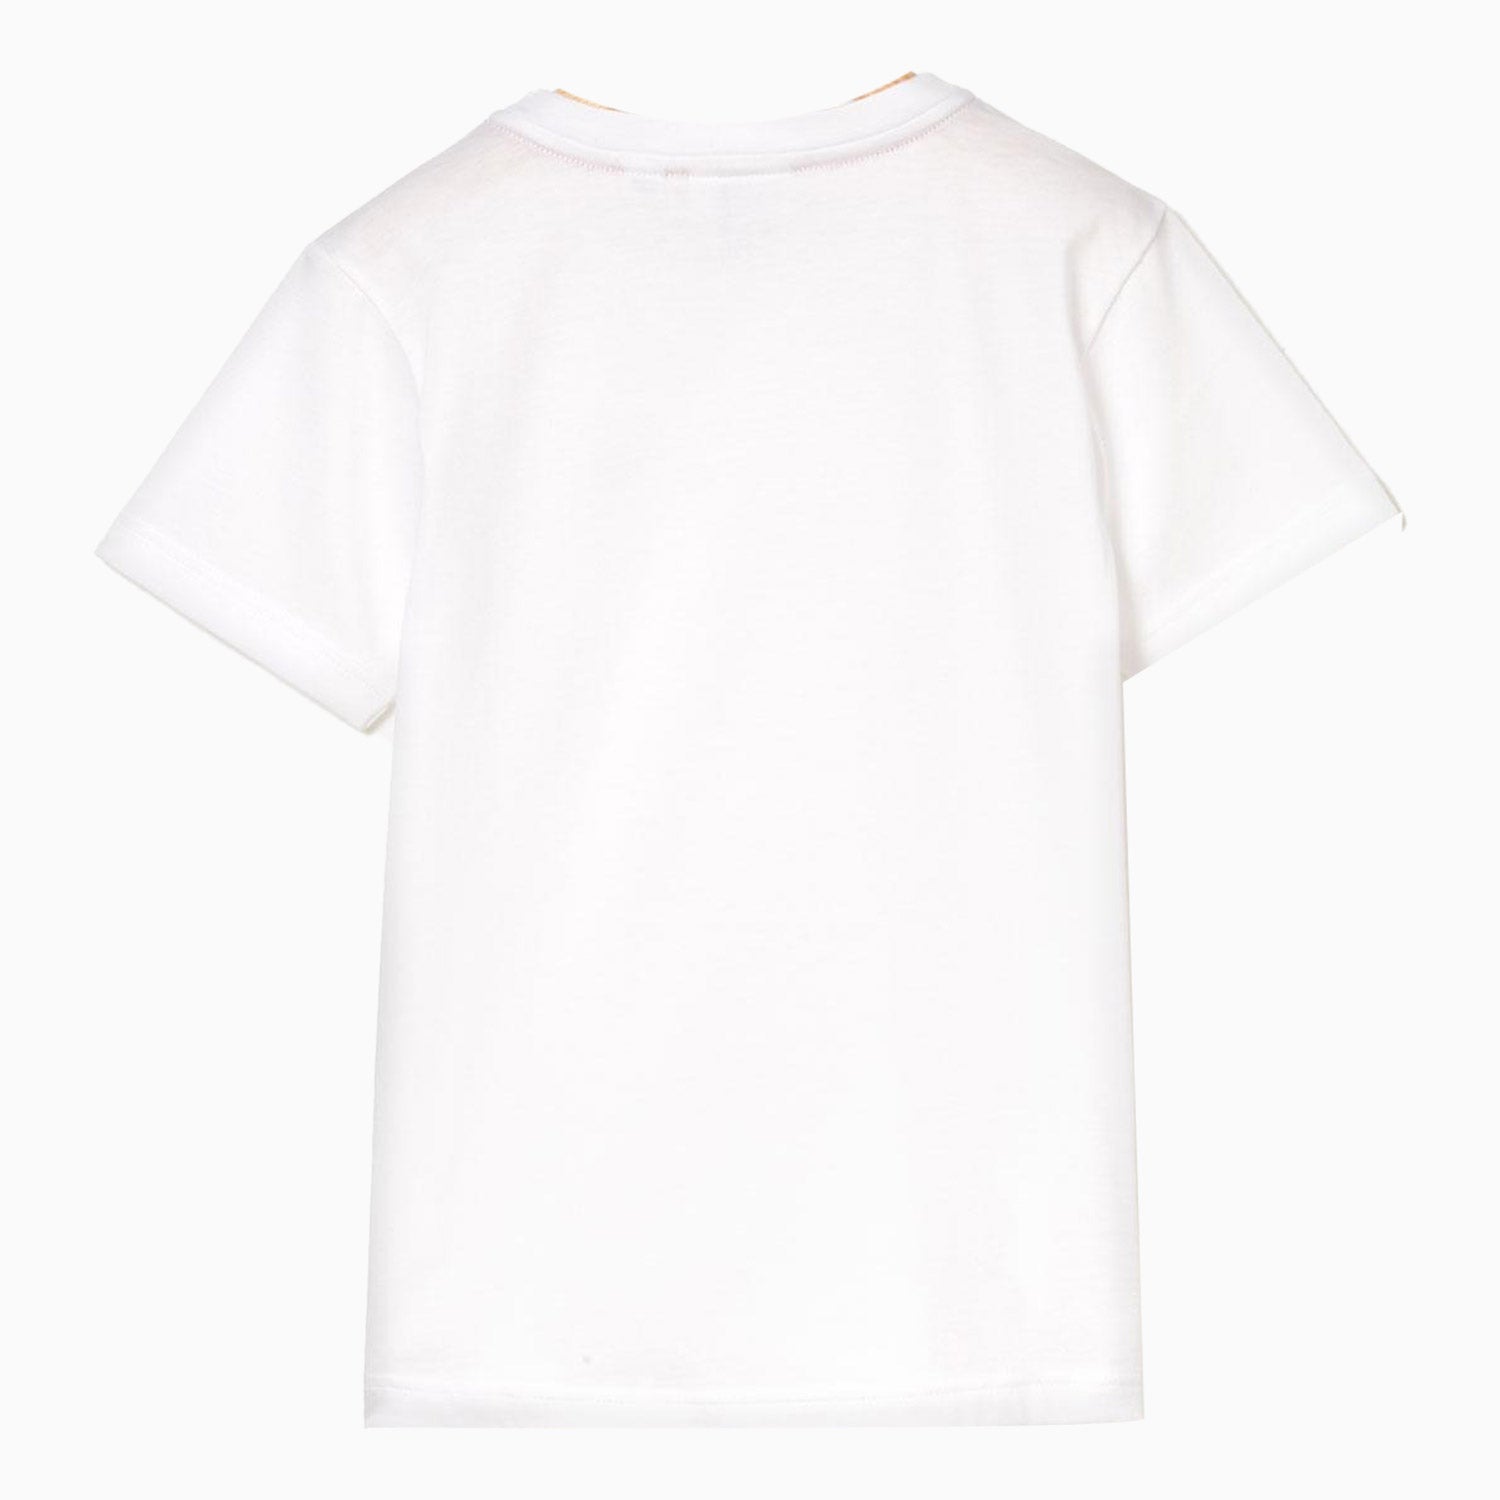 lacoste-kids-jersey-t-shirt-tj1442-001